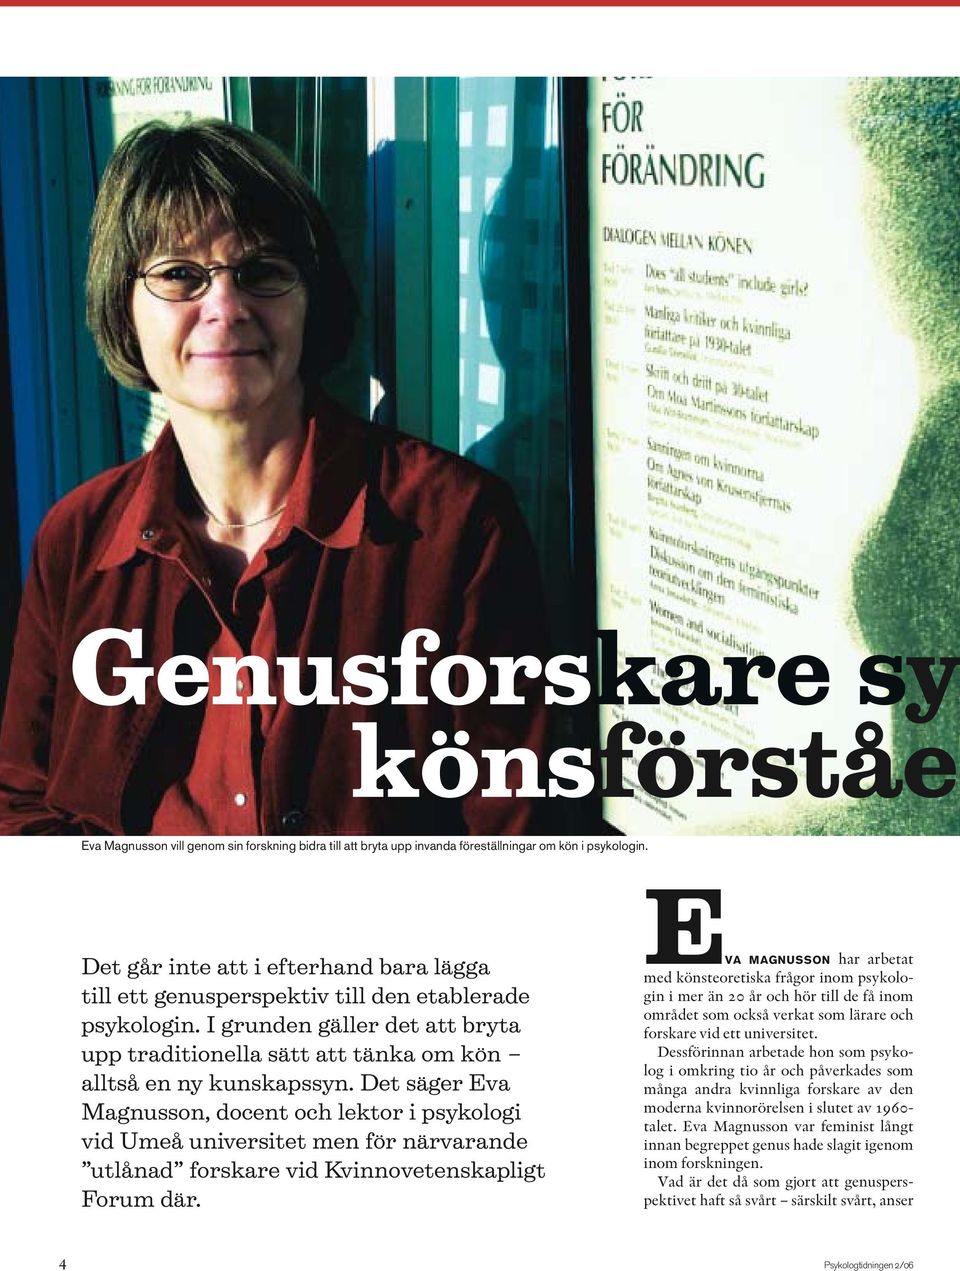 Det säger Eva Magnusson, docent och lektor i psykologi vid Umeå universitet men för närvarande utlånad forskare vid Kvinnovetenskapligt Forum där.